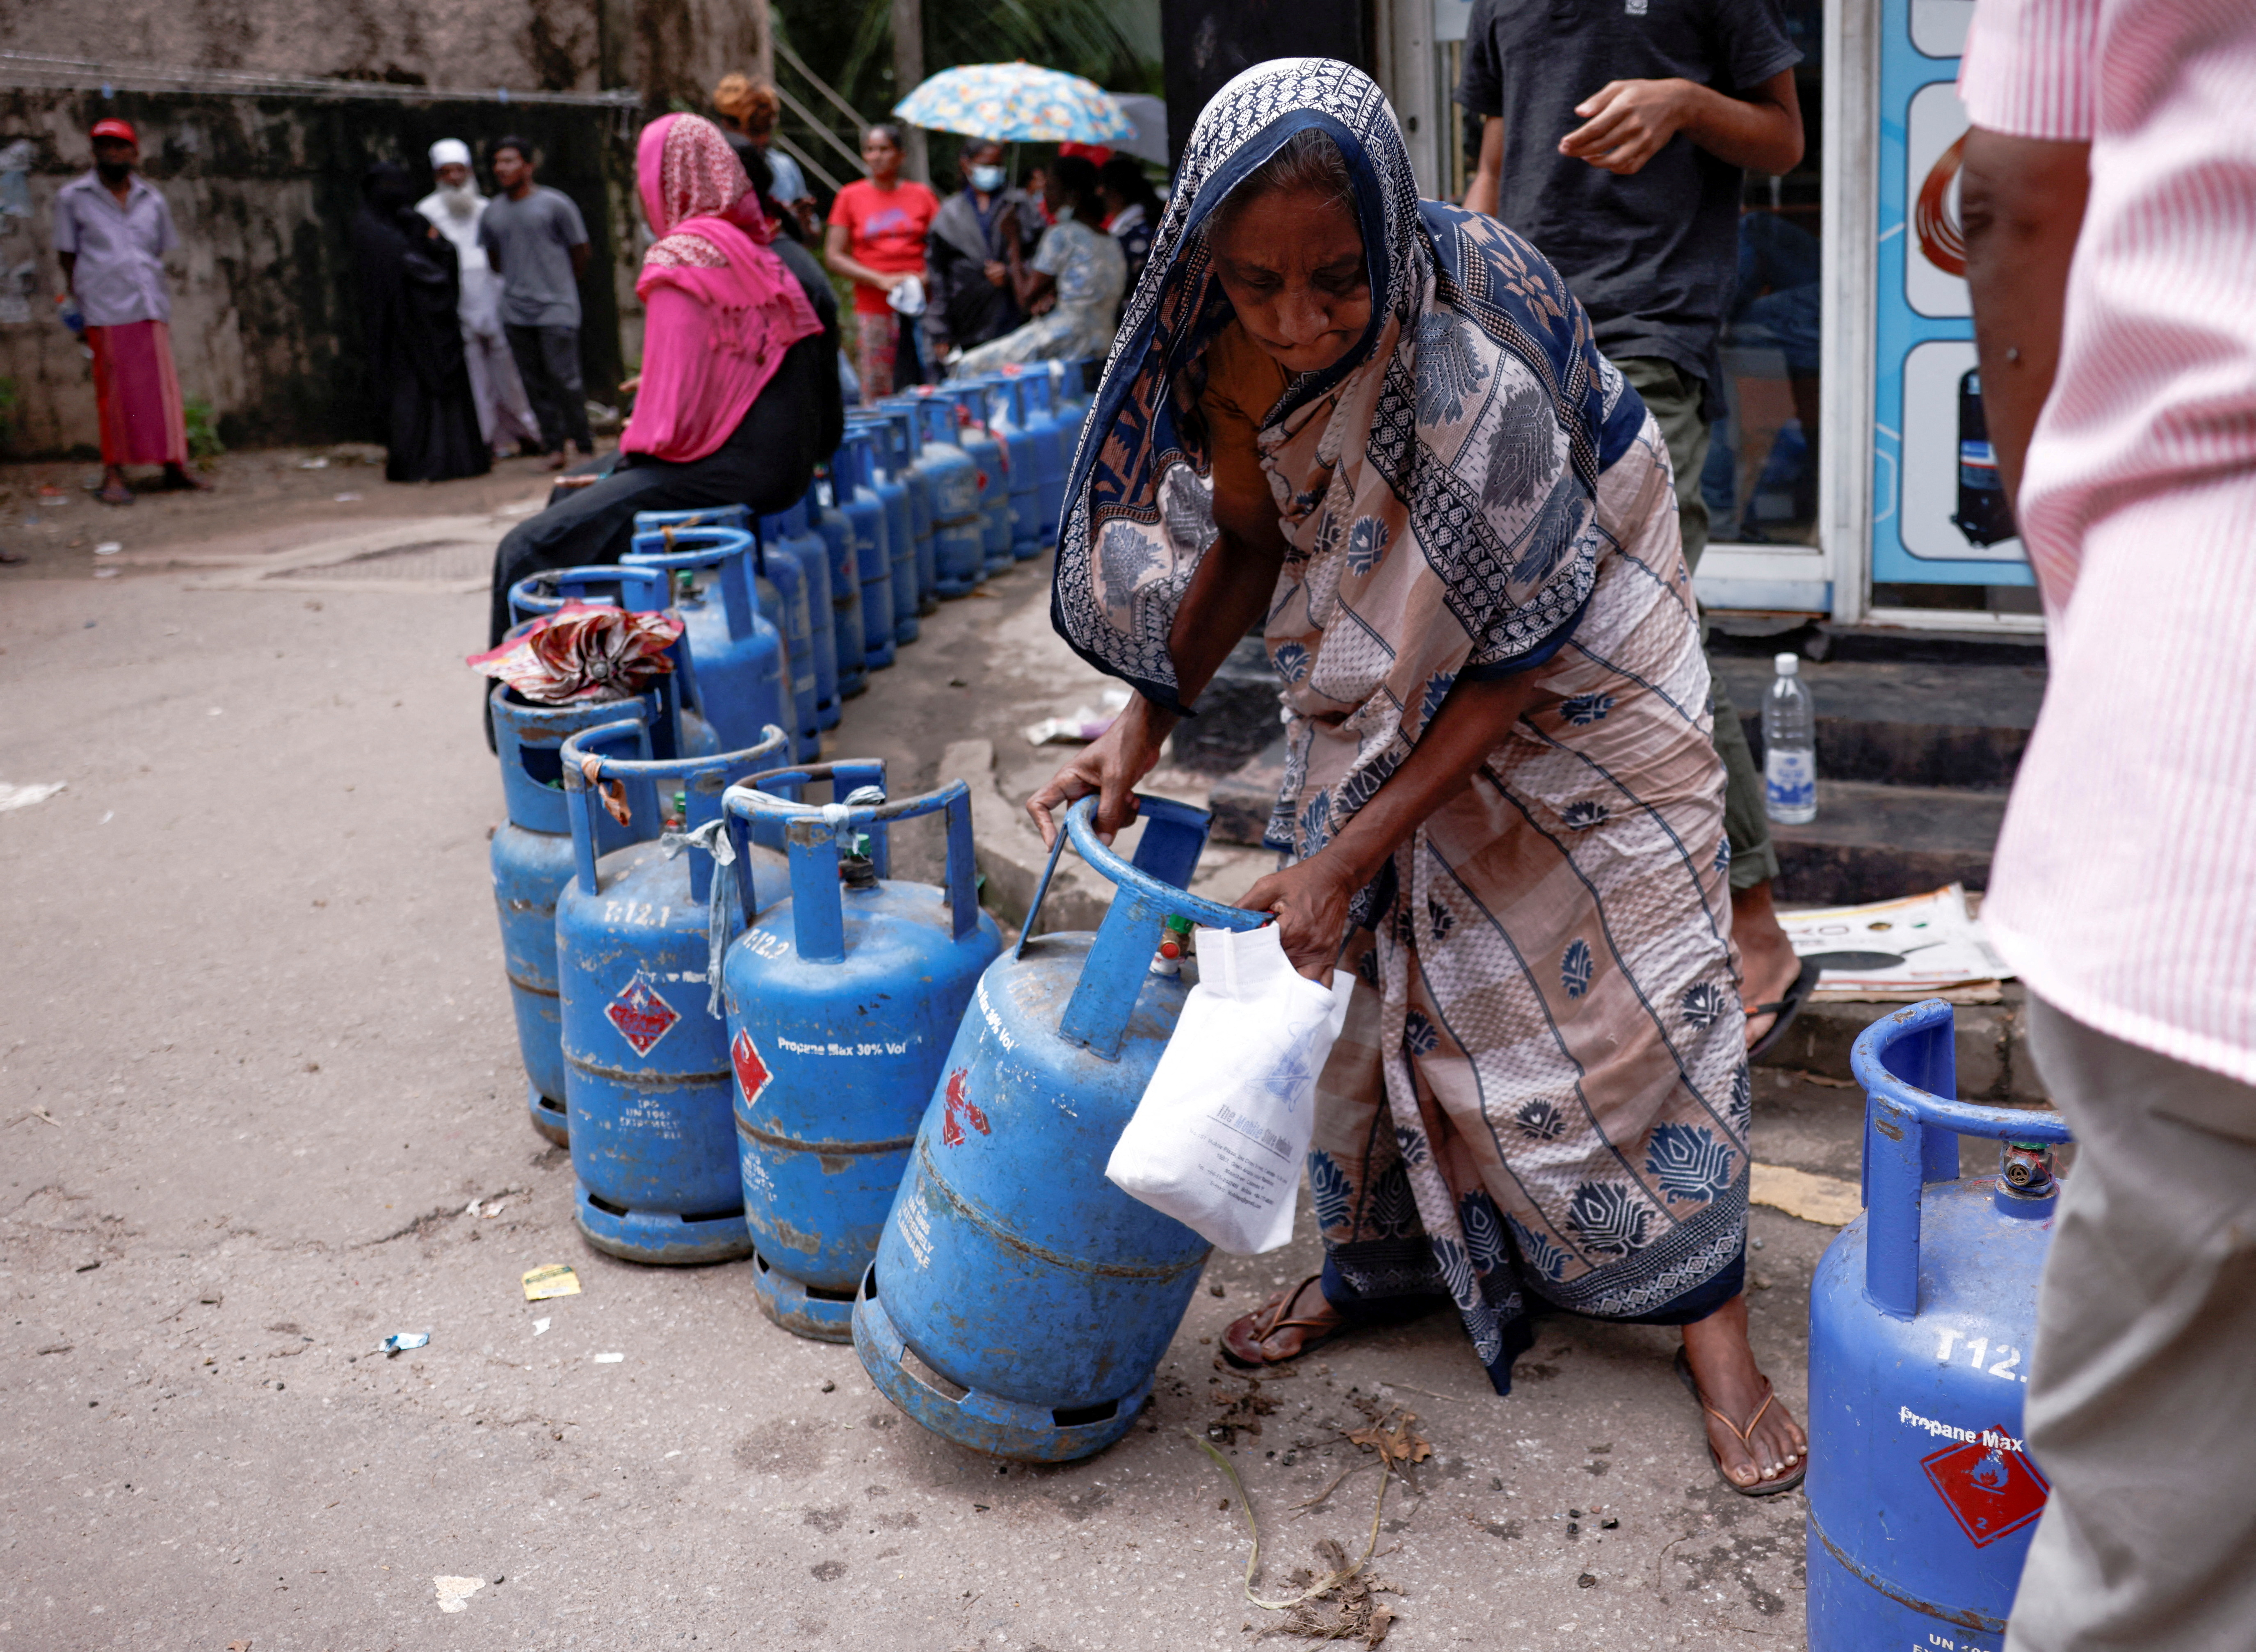 El combustible es otro de los productos escasos en el país al punto de causar una crisis social profunda. 

Sri Lanka, June 1, 2022. REUTERS/Dinuka Liyanawatte/File Photo/File Photo